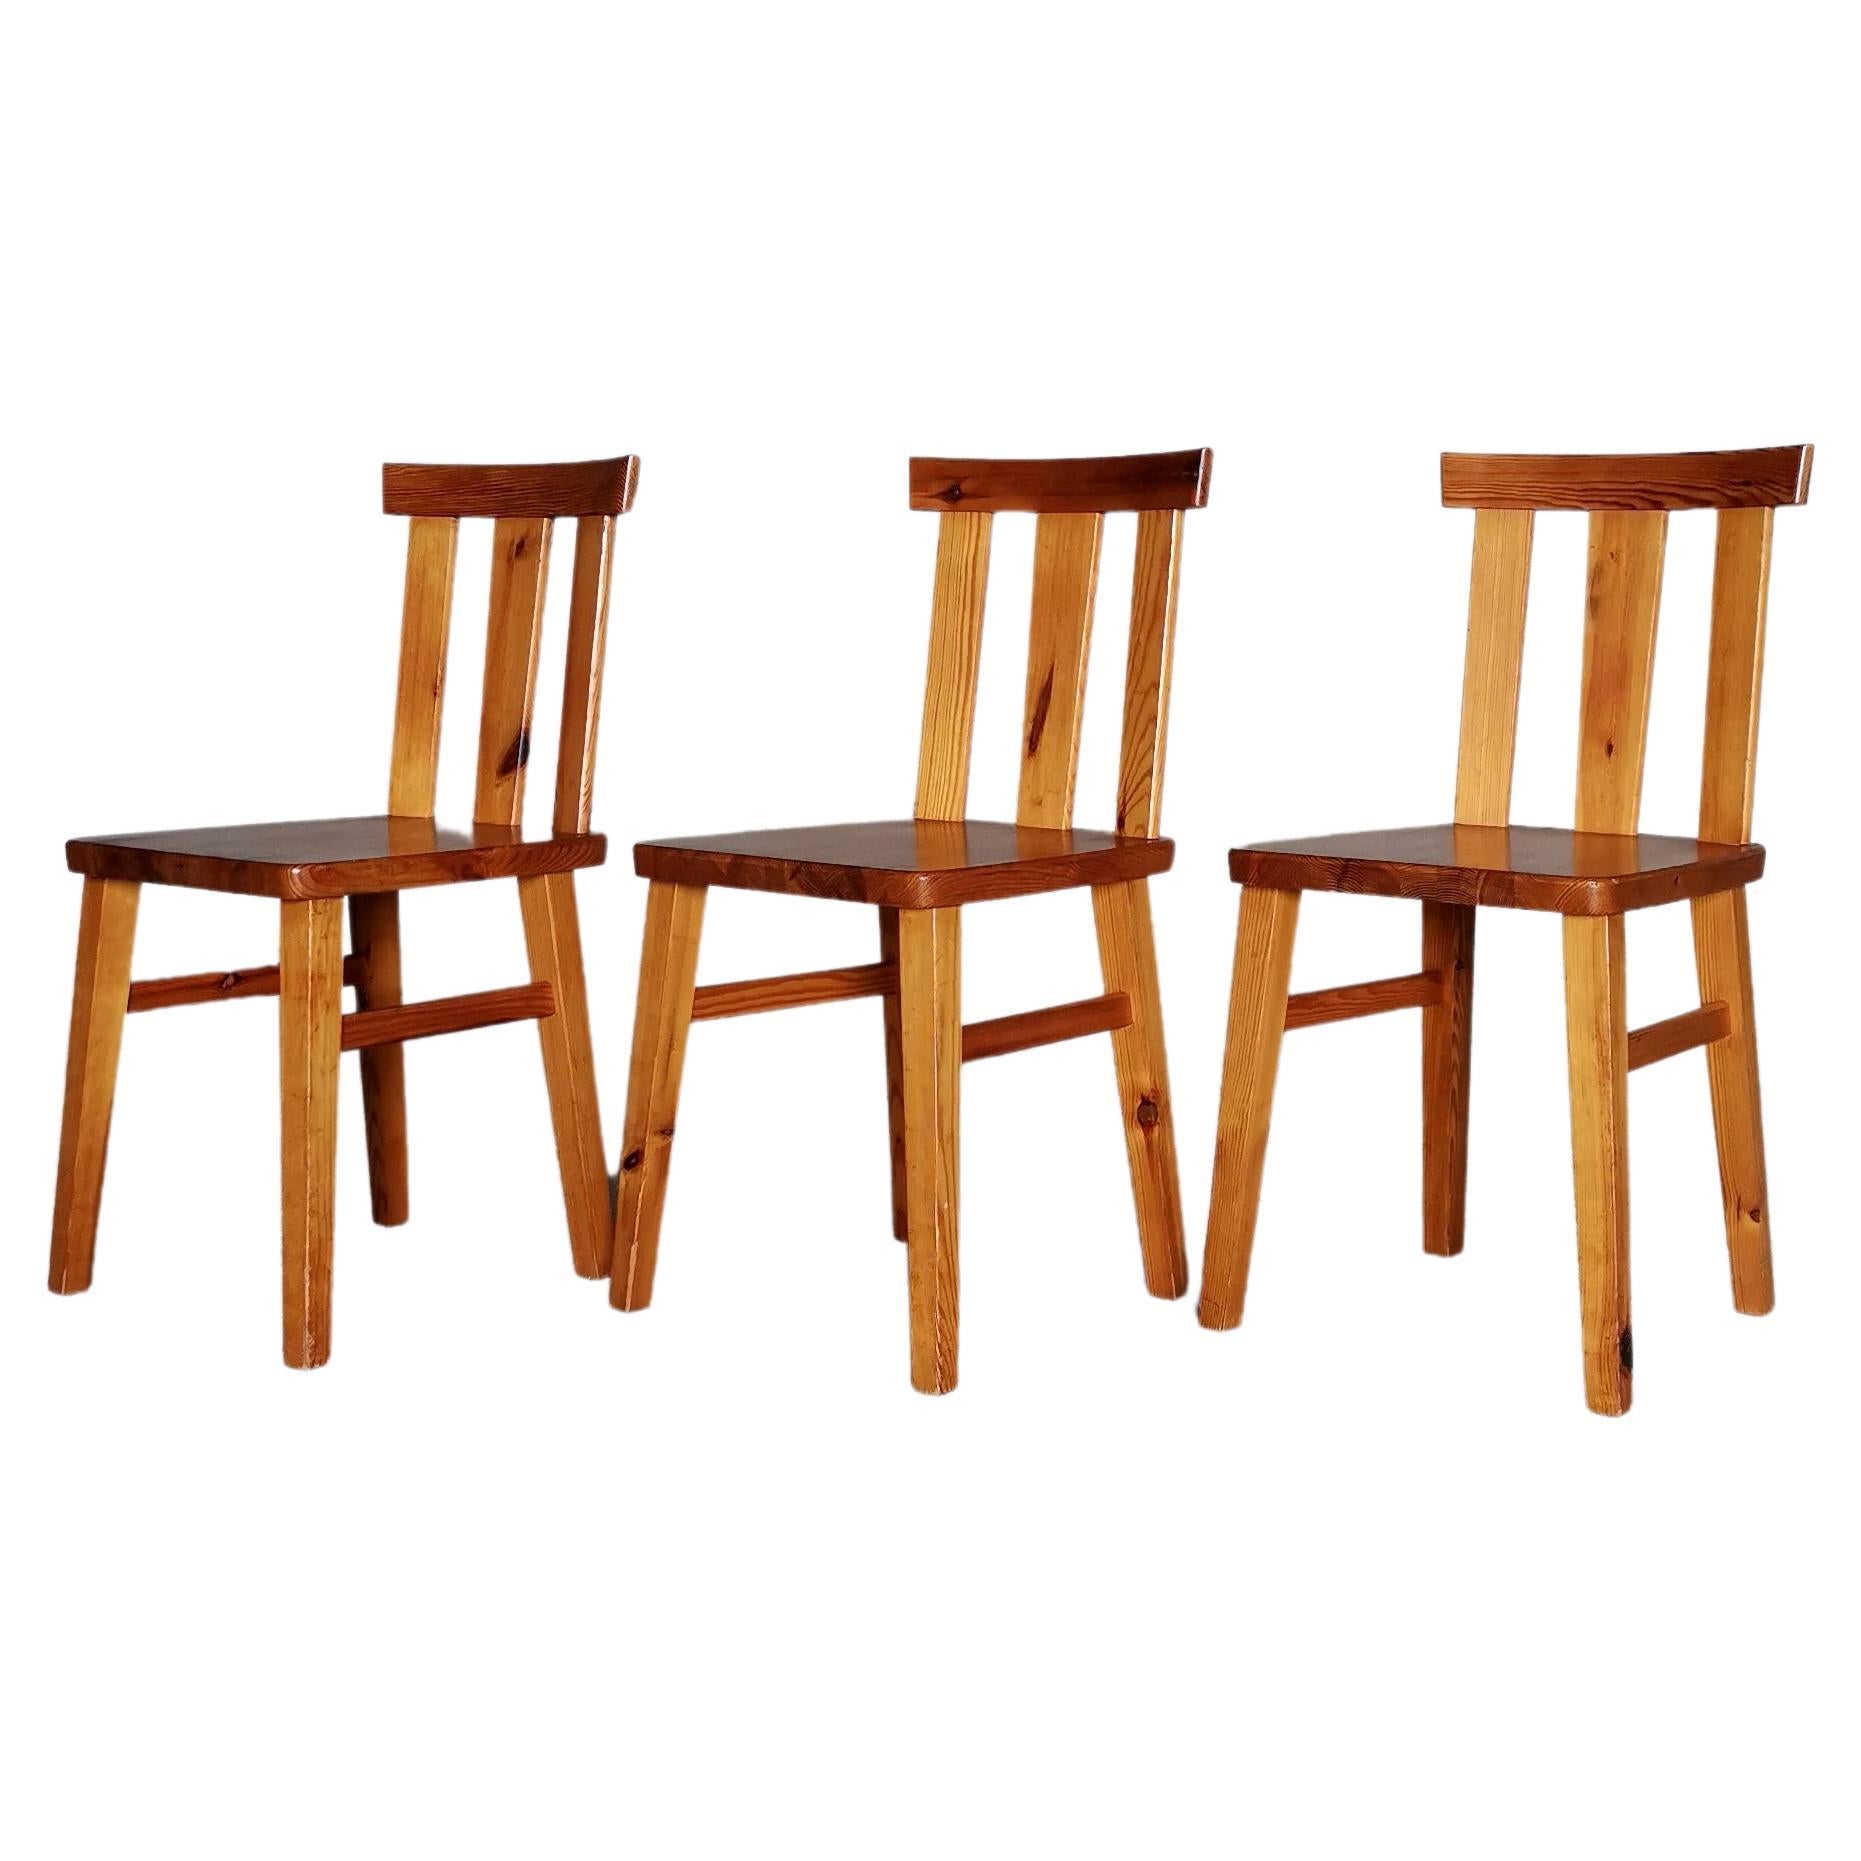 Satz von 3 Esszimmerstühlen aus massivem Kiefernholz, Stil von Axel Einar Hjorth, Schweden 1930er Jahre